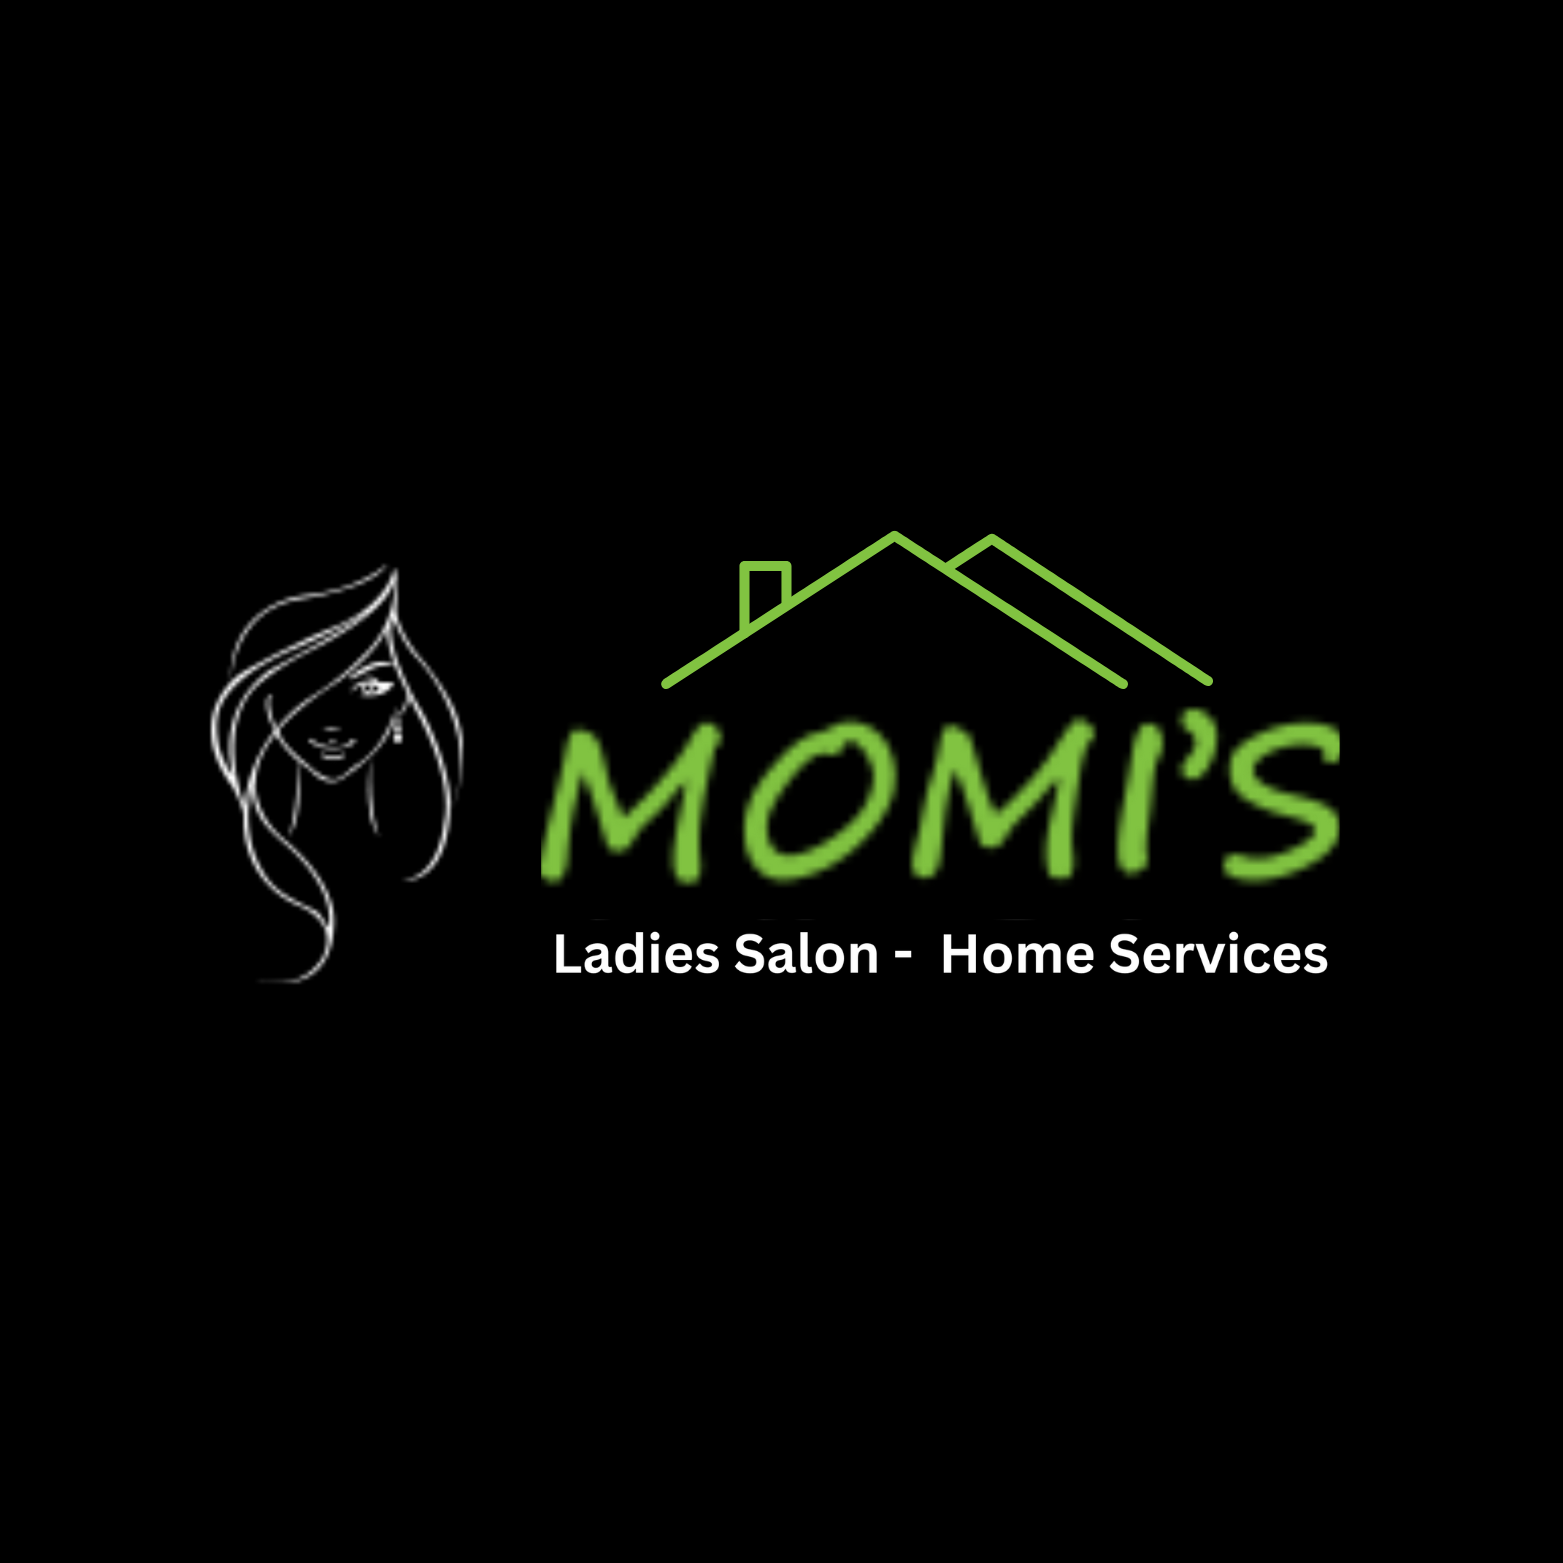 momis ladies salon home services